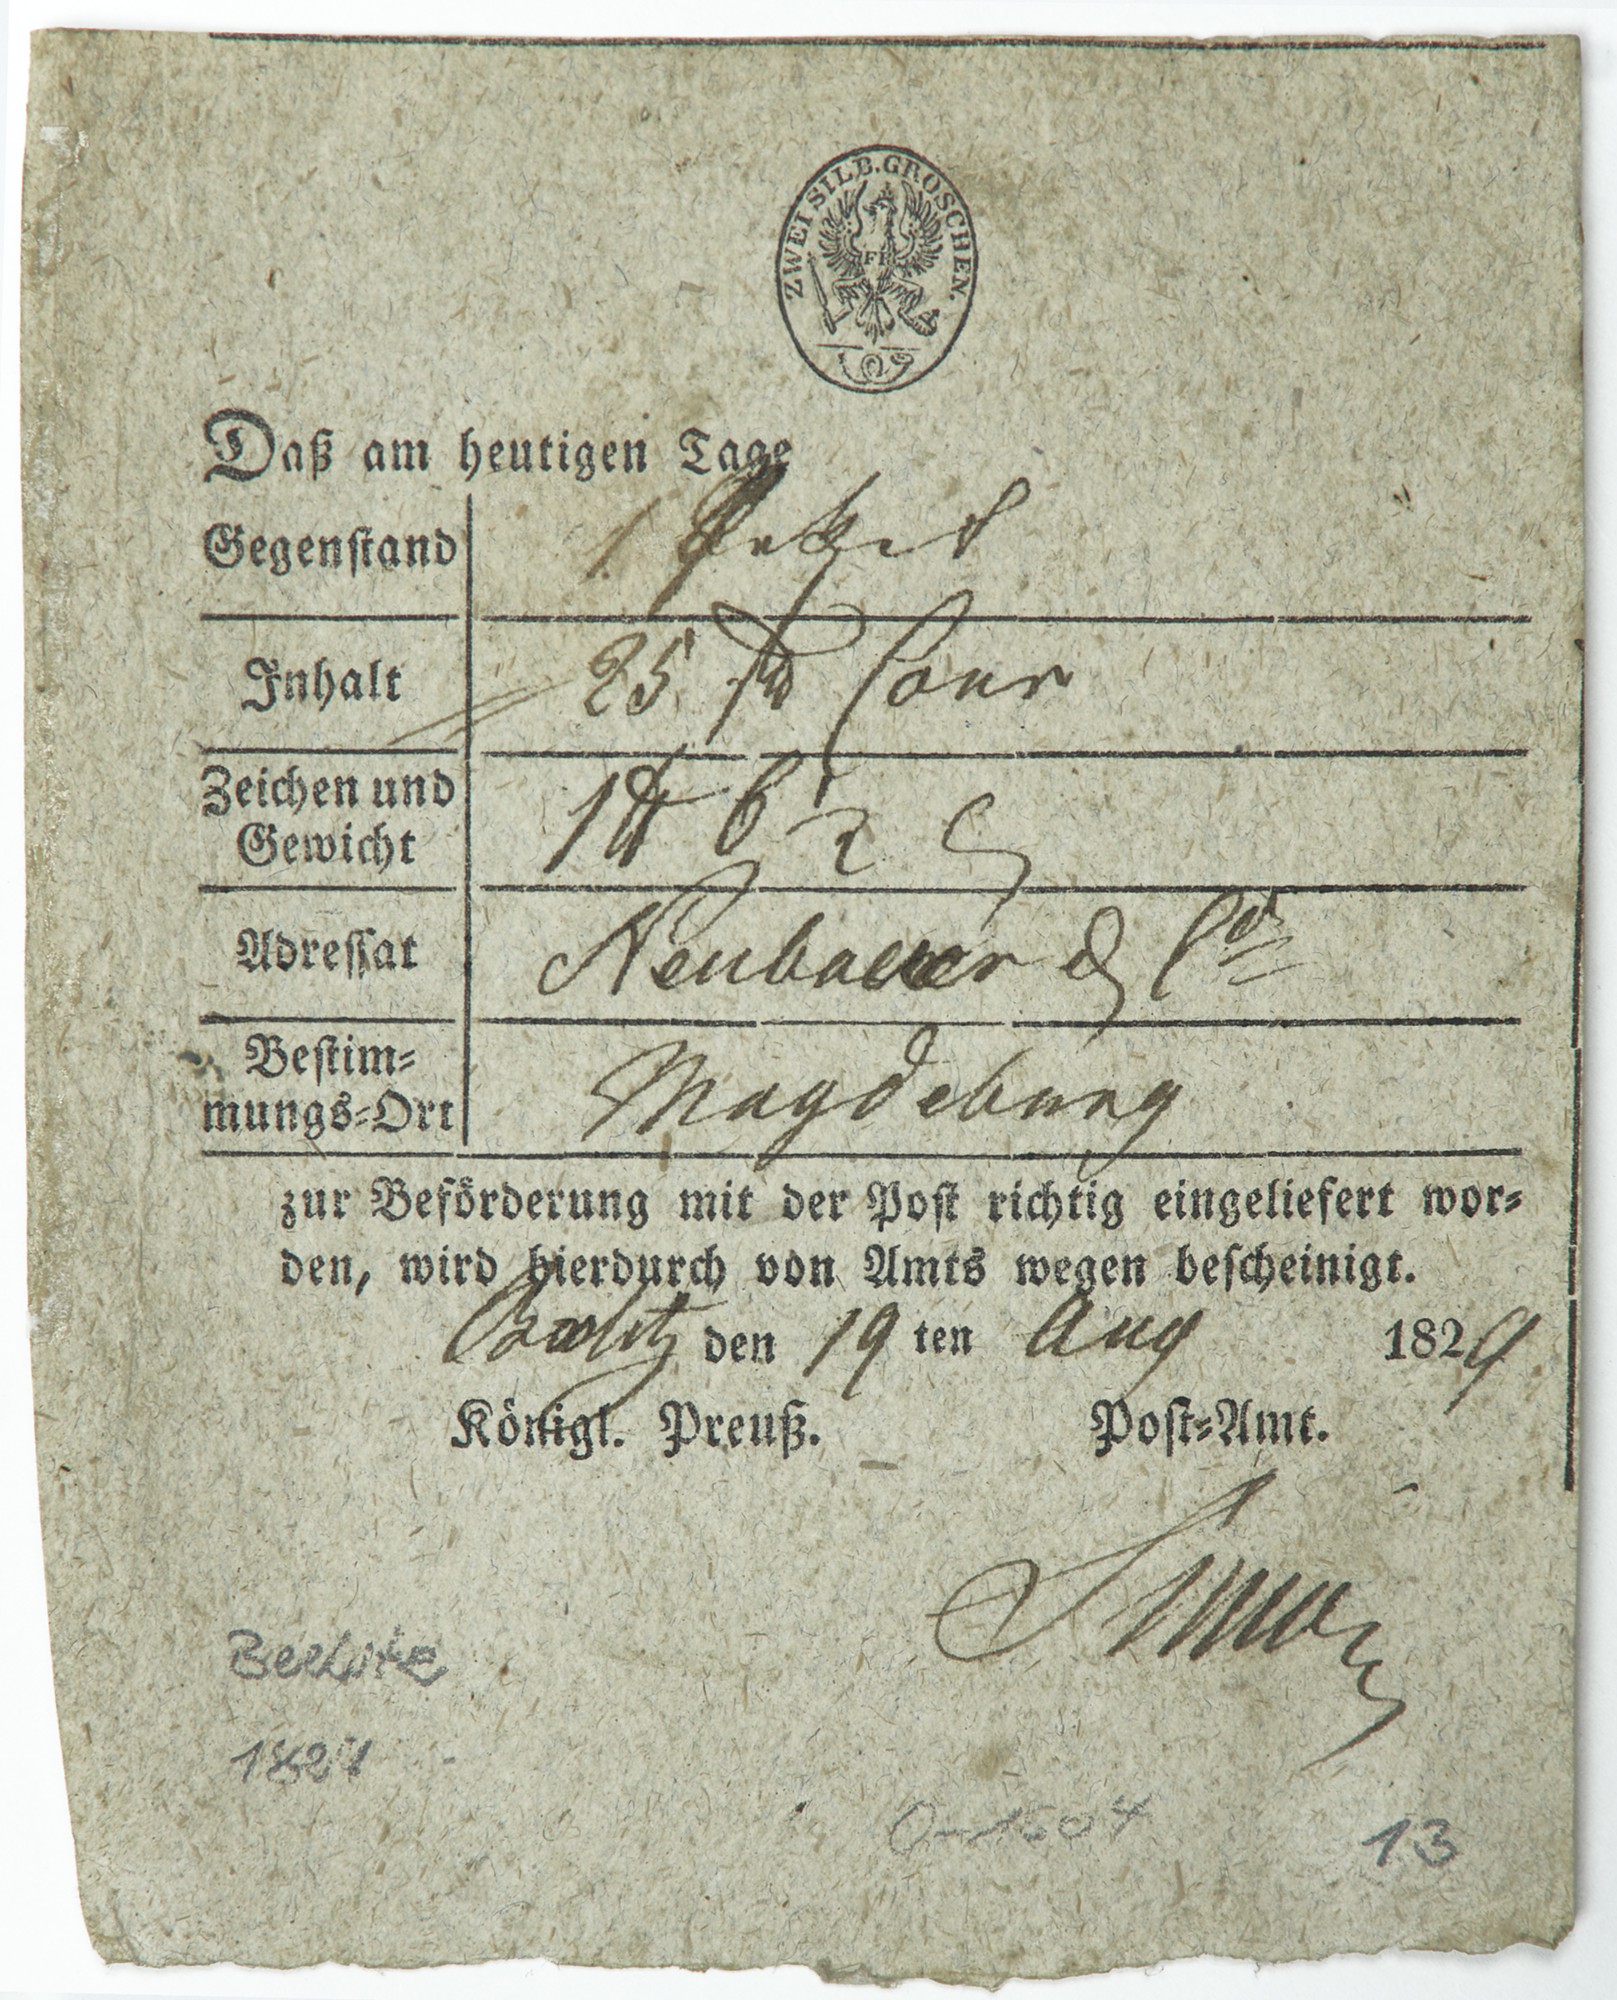 Einlieferungsschein eines Wertpaketes (Alte Posthalterei - Museum Beelitz CC BY-NC-SA)